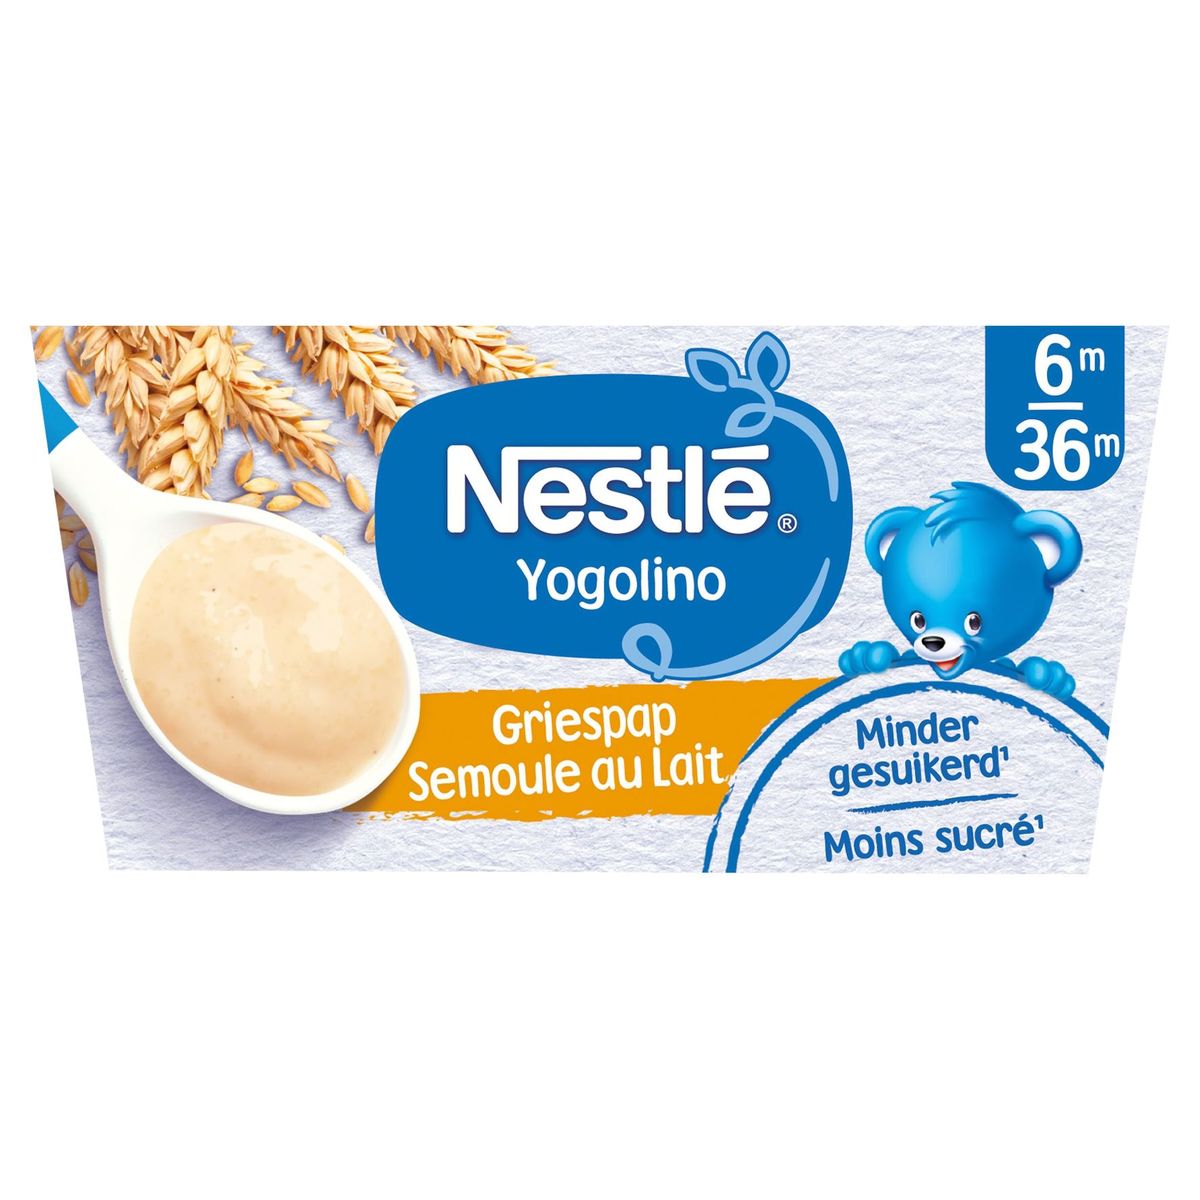 Nestlé Yogolino Semoule au Lait 6M - 36M 4 x 100 g